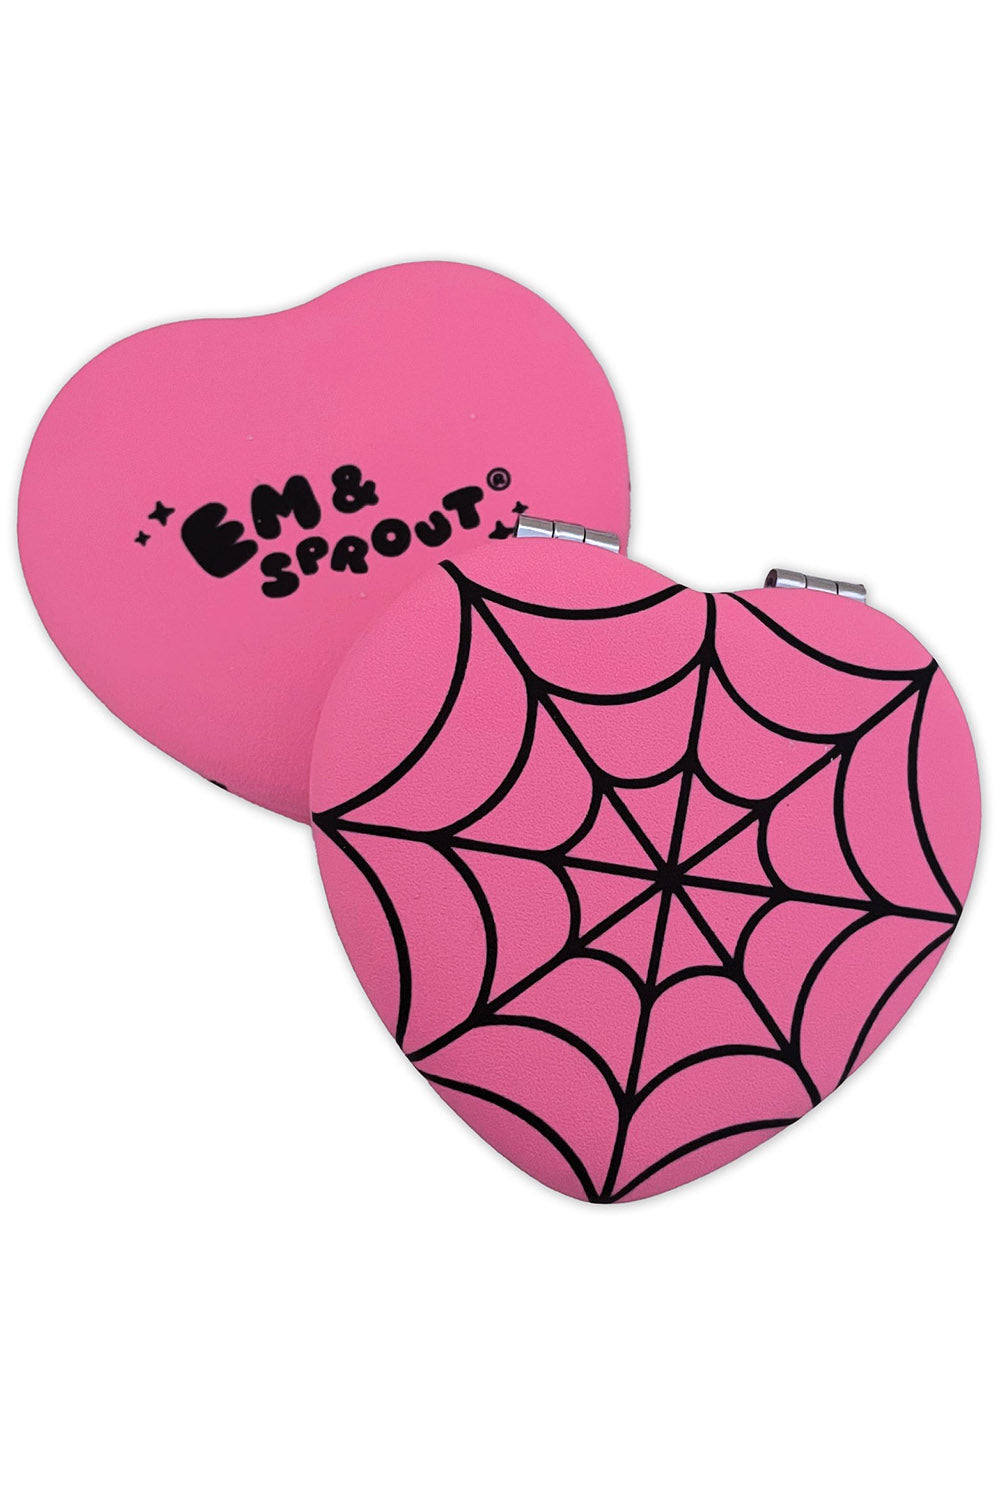 Pink Spiderweb Heart Pocket Mirror